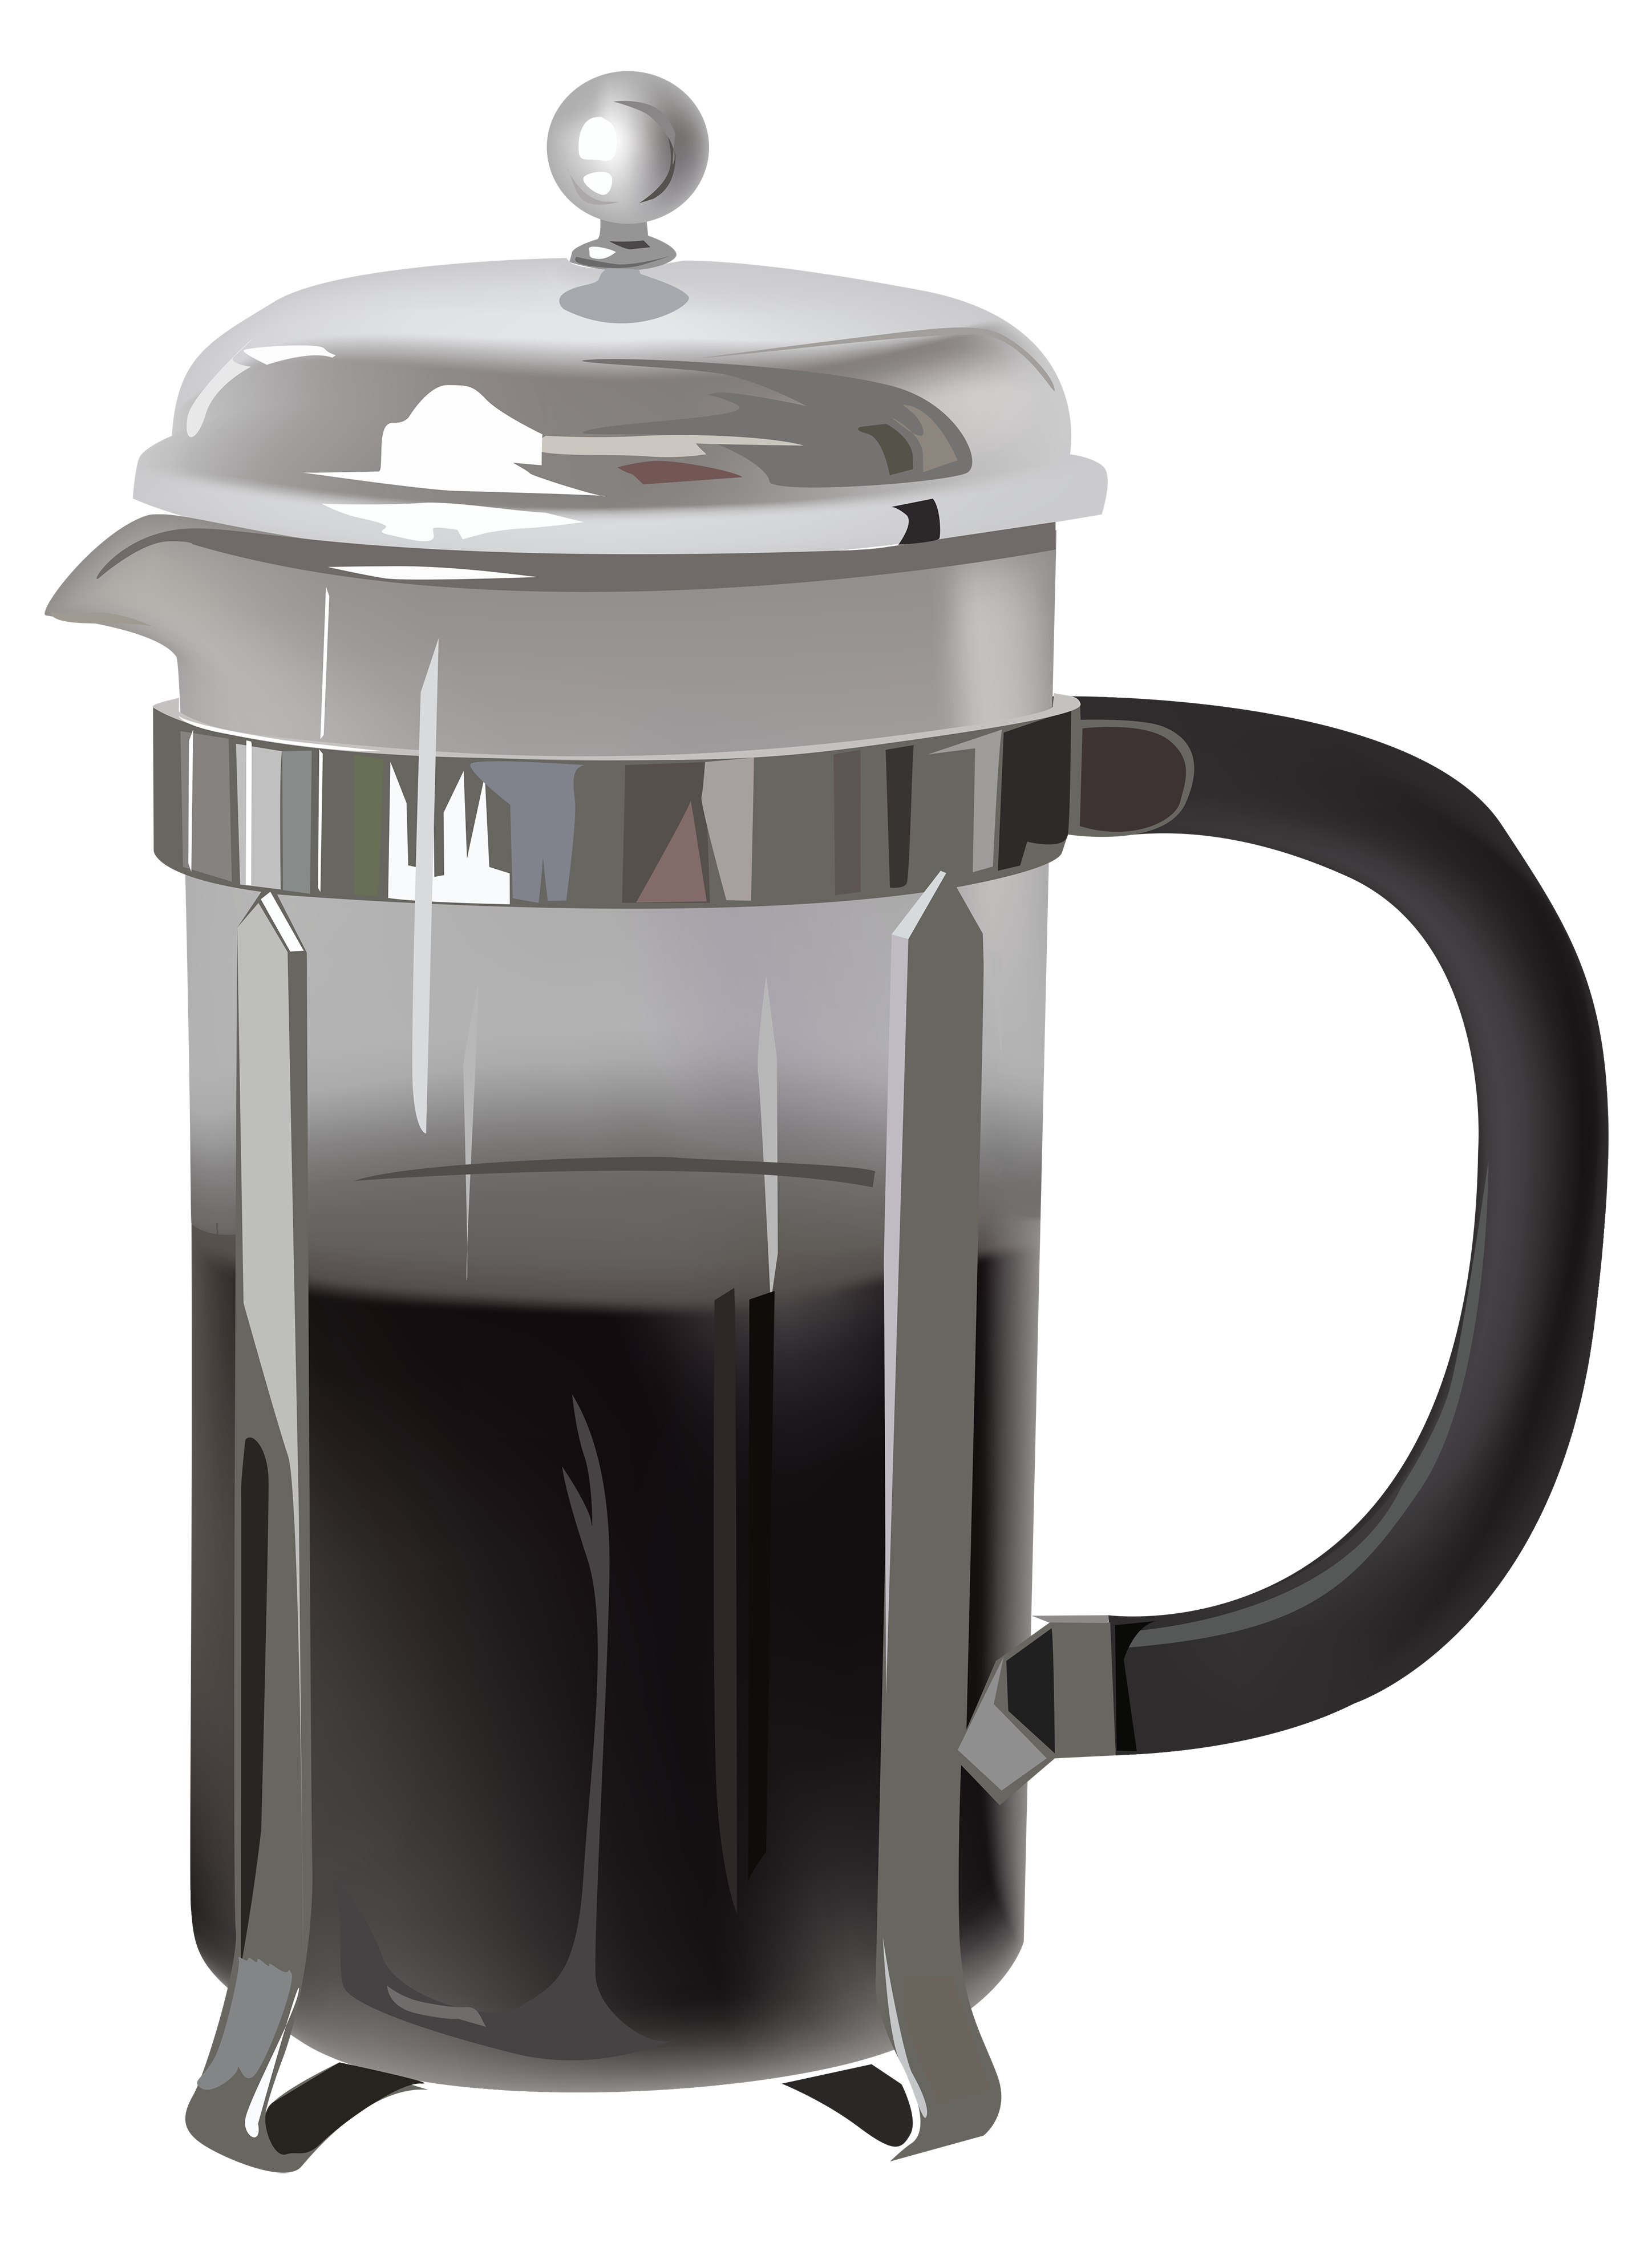 File:Big Coffee Pot.jpg - Wikipedia